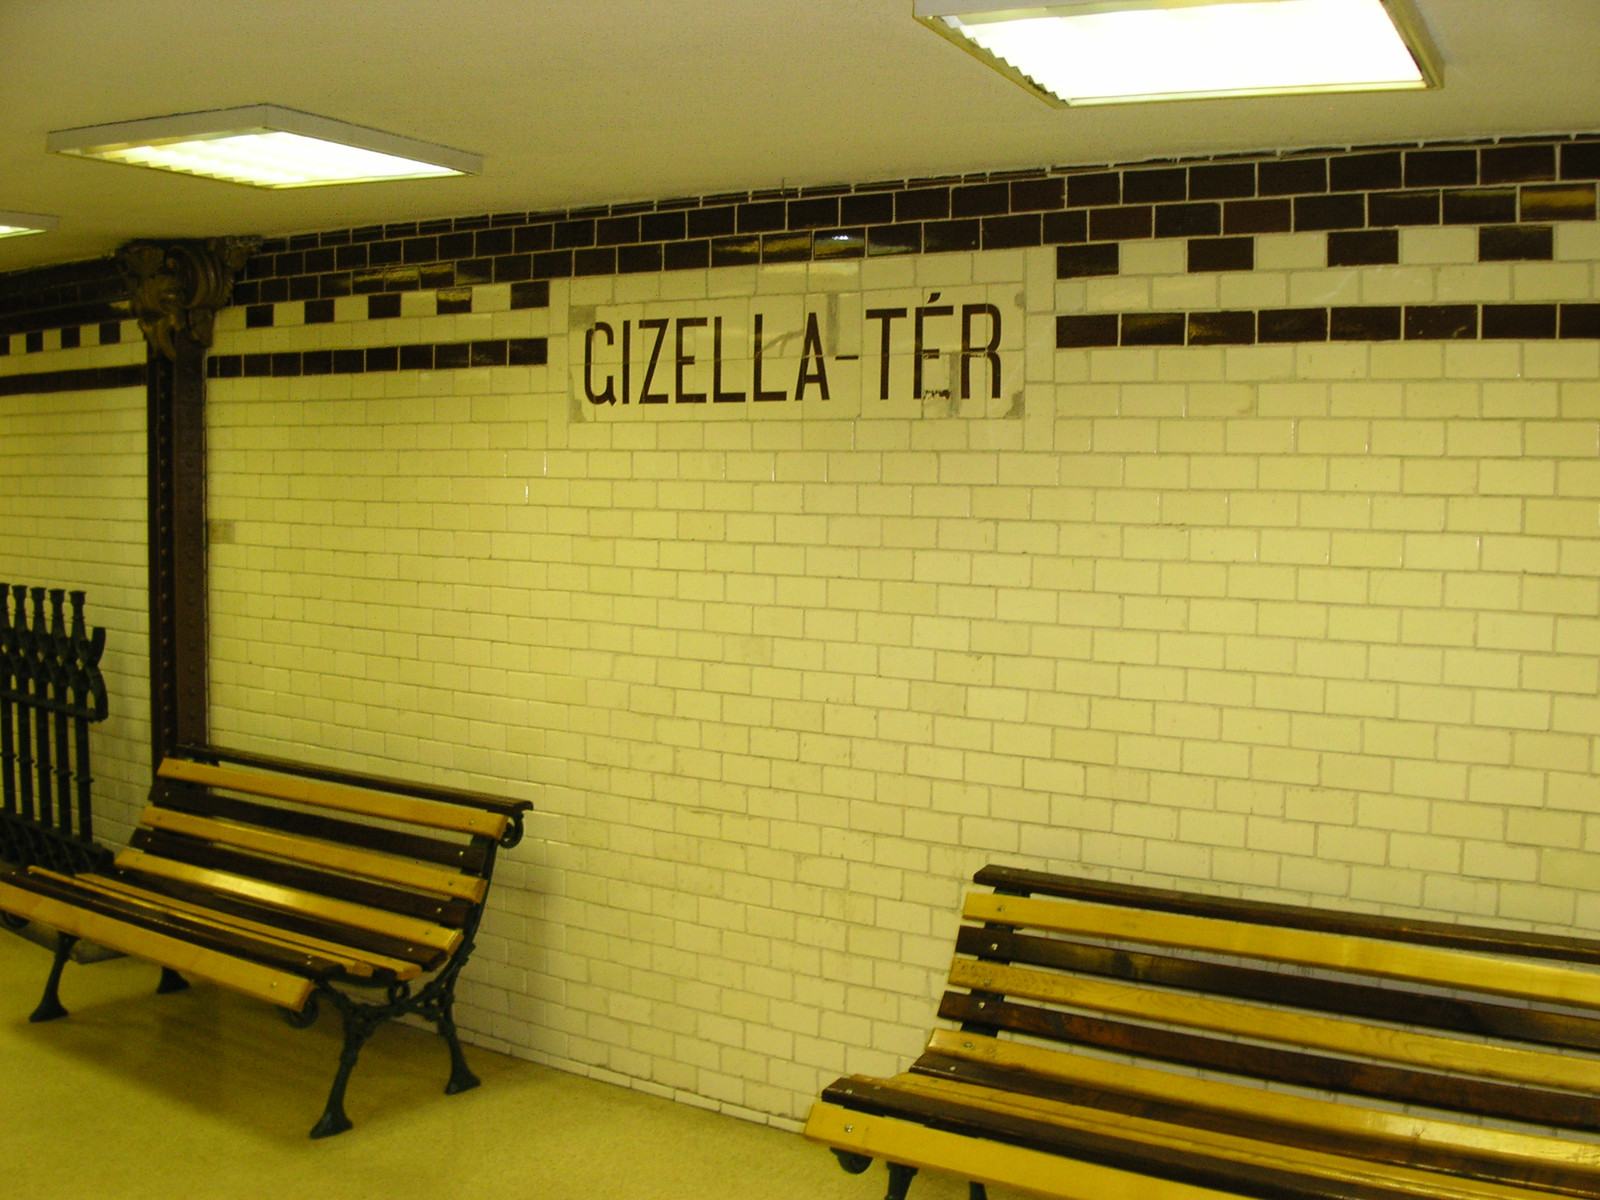 Gizella téri állomás a Deák téren :-)